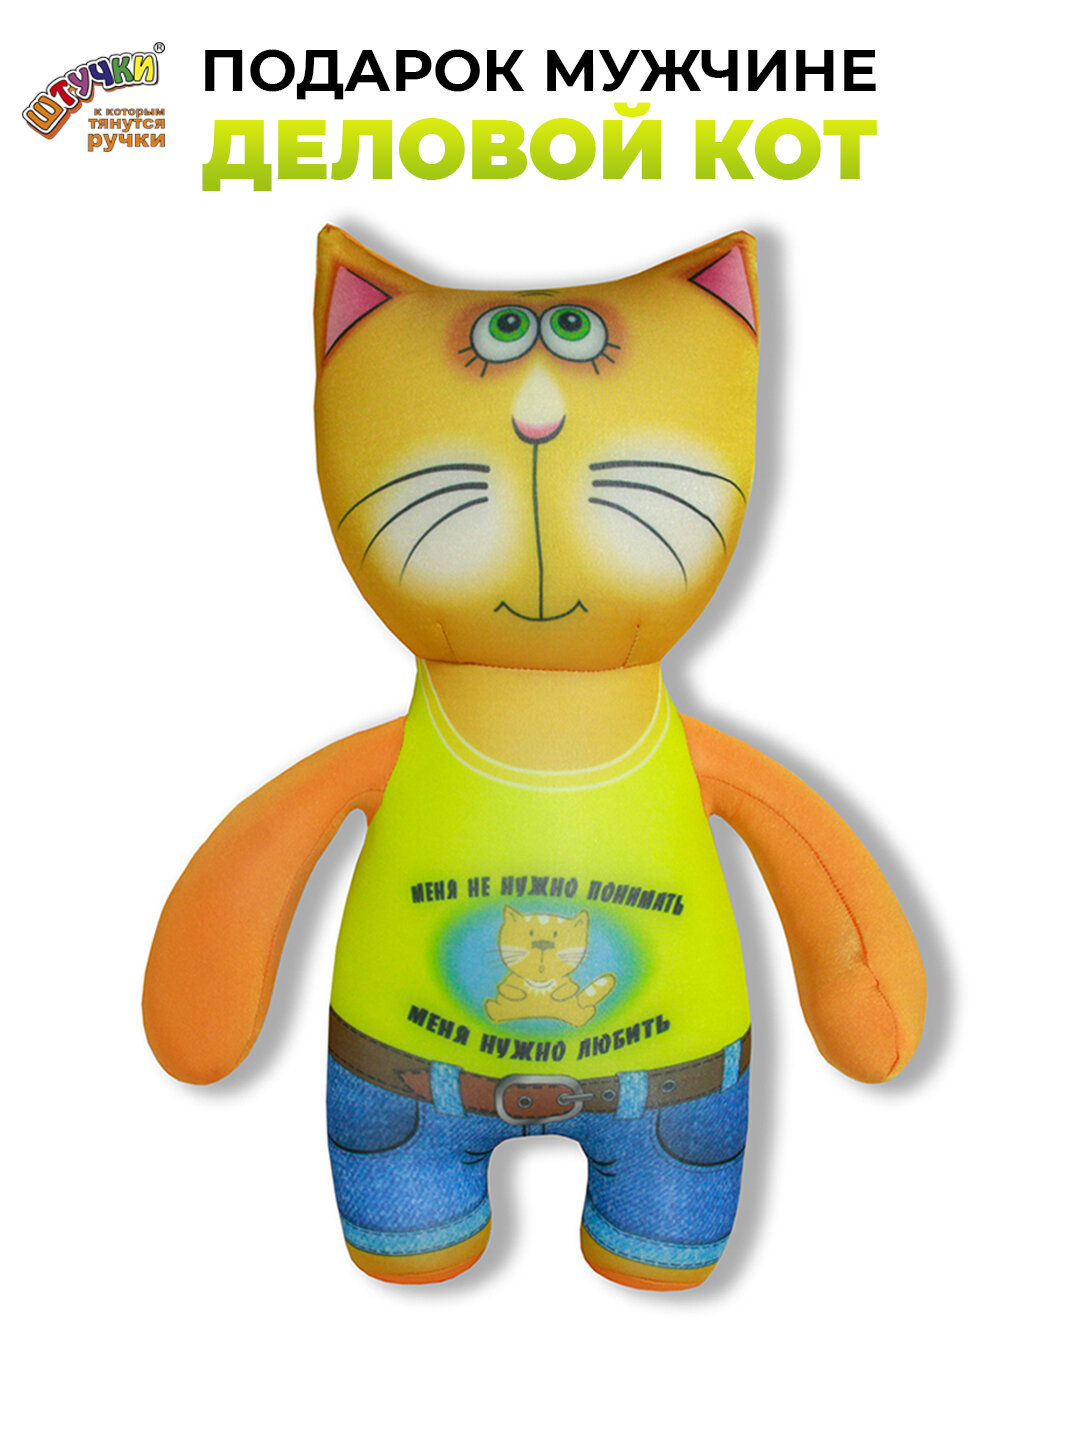 Мягкая игрушка - антистресс Штучки, к которым тянутся ручки Деловые Коты, желтая майка